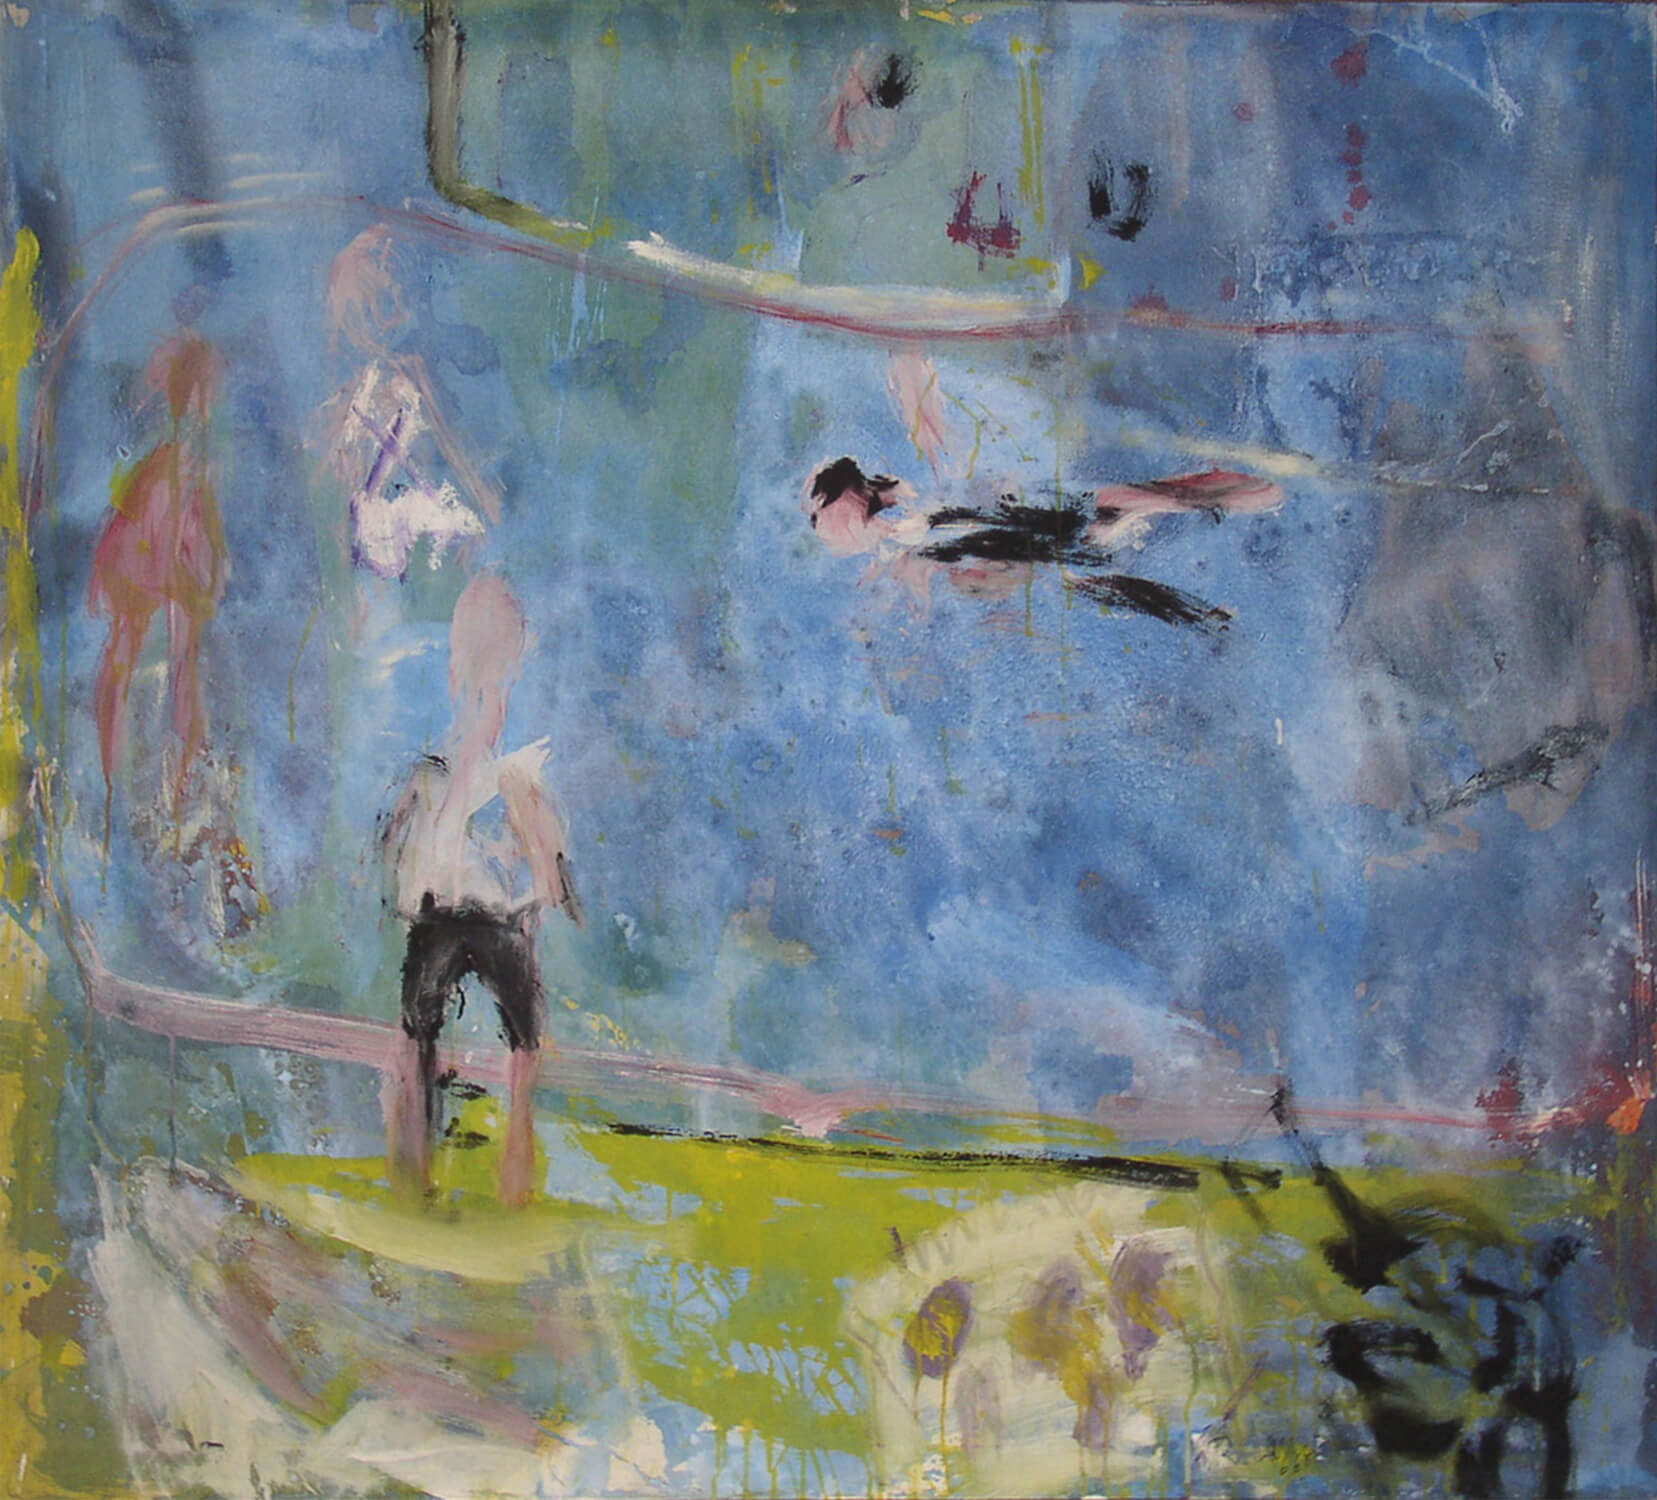 Reinhard Lange, Insulaner, 1966, Dispersionsfarbe auf Leinwand, 135 x 150 cm